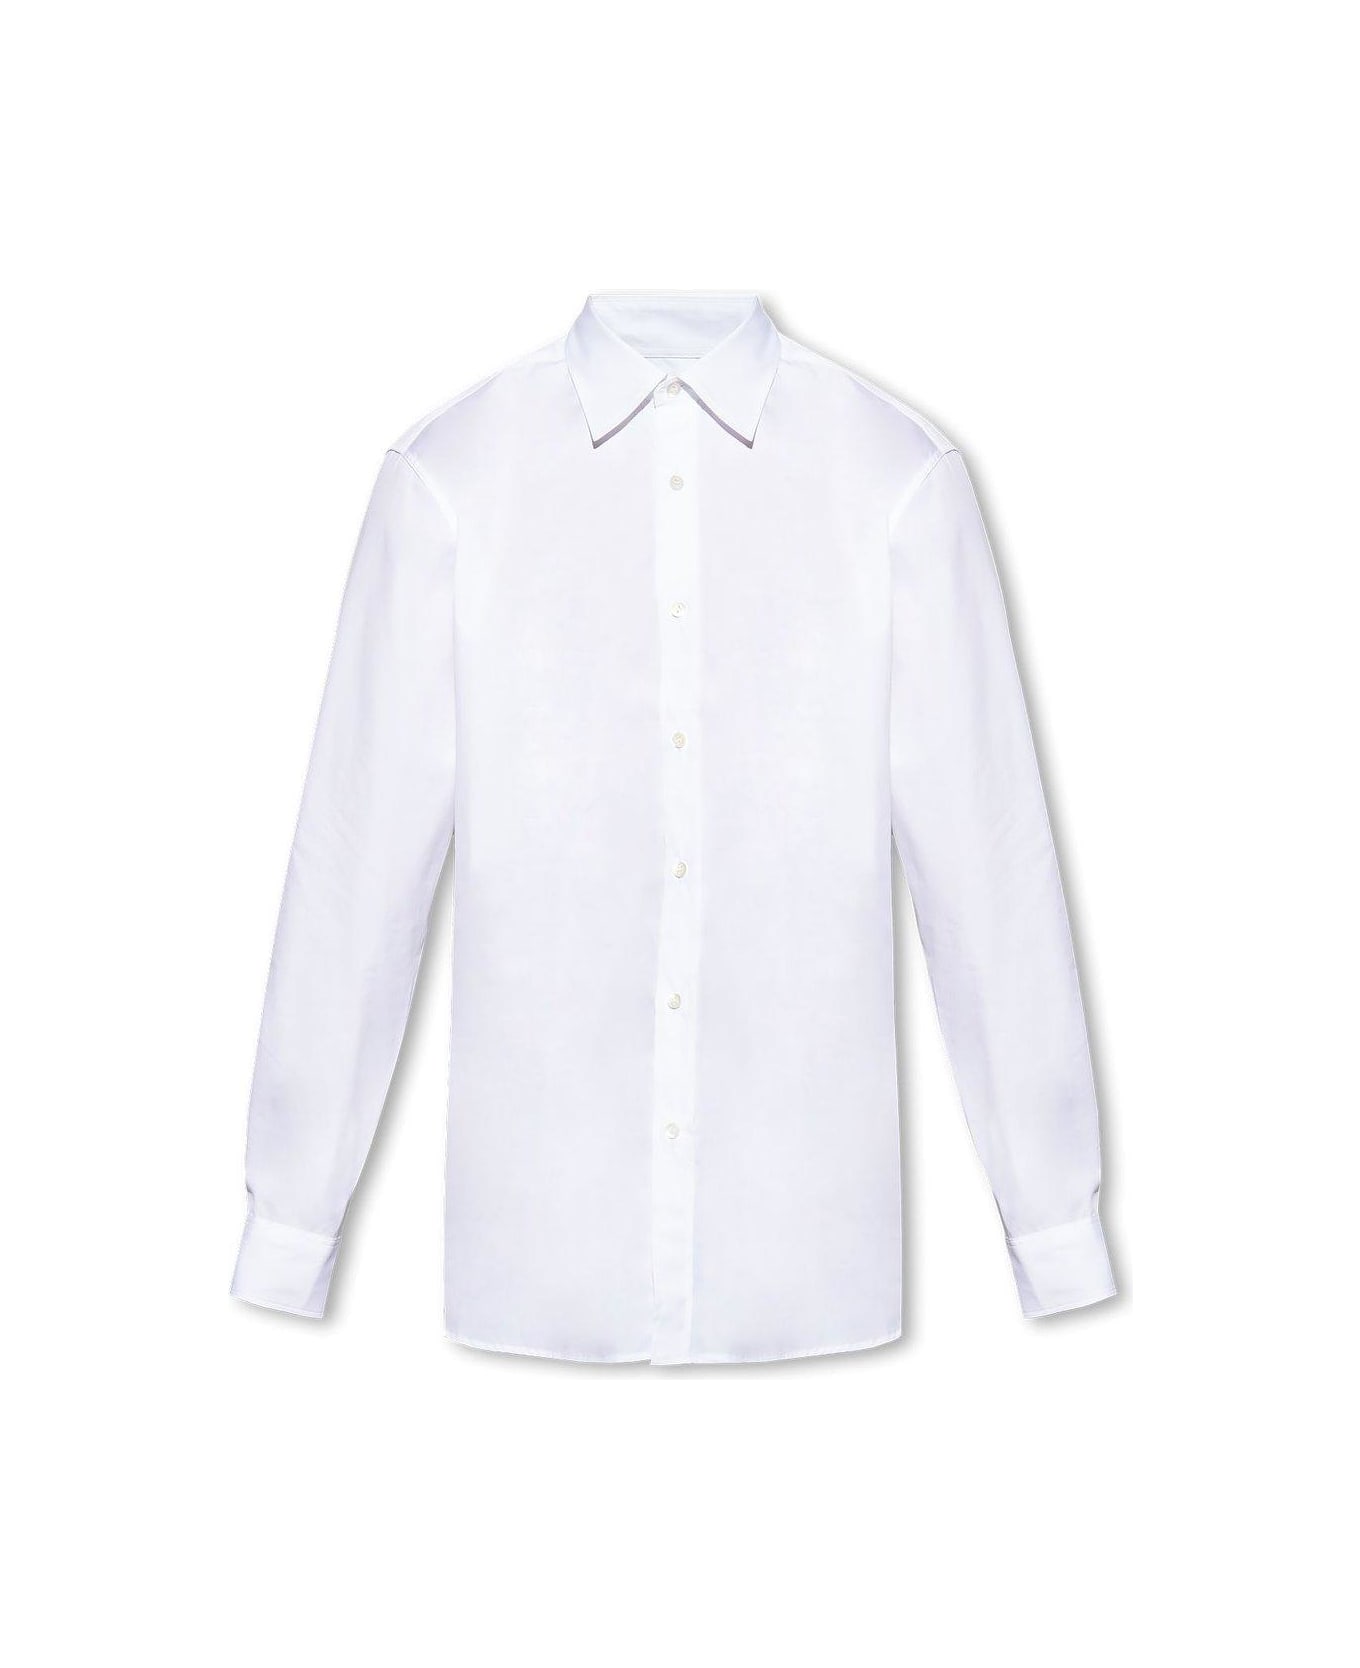 Dries Van Noten Buttoned Long-sleeved Shirt - Bianco